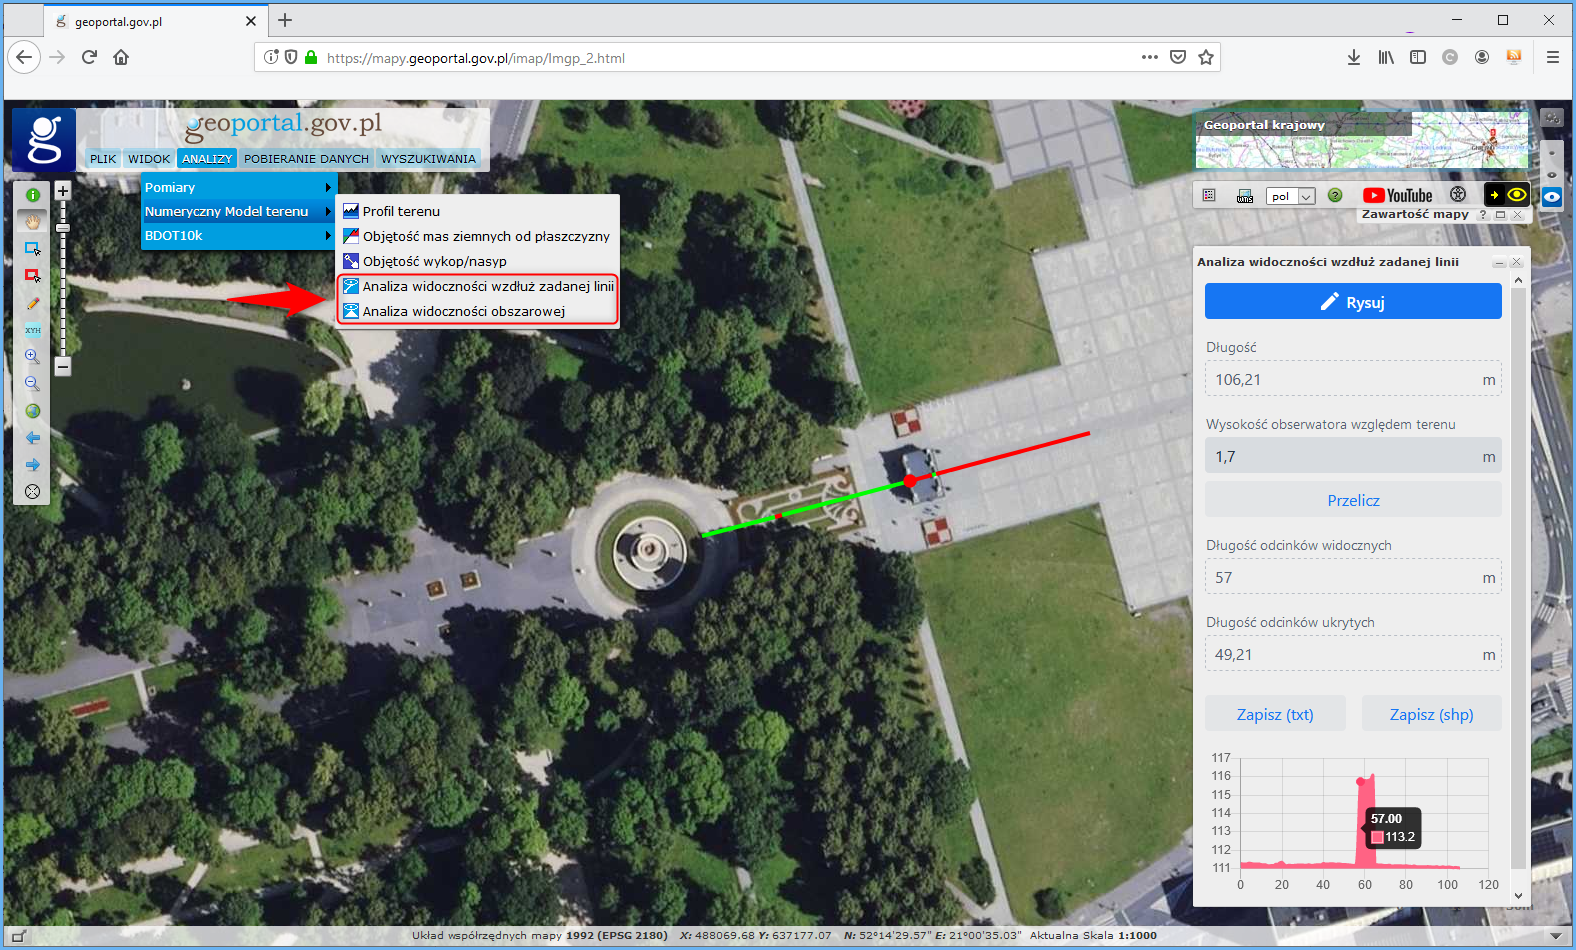 Ilustracja przedstawia zrzut ekranu z serwisu www.geoportal.gov.pl z zaznaczoną lokalizacją narzędzi „Analiza widoczności wzdłuż zadanej linii” oraz „Analiza widoczności obszarowej”, które aktualnie bazują na Numerycznym Modelu Pokrycia Terenu (NMPT). Dla zobrazowania działania narzędzia została wykonana analiza widoczności wzdłuż zadanej linii i zaprezentowano wyniki analizy.